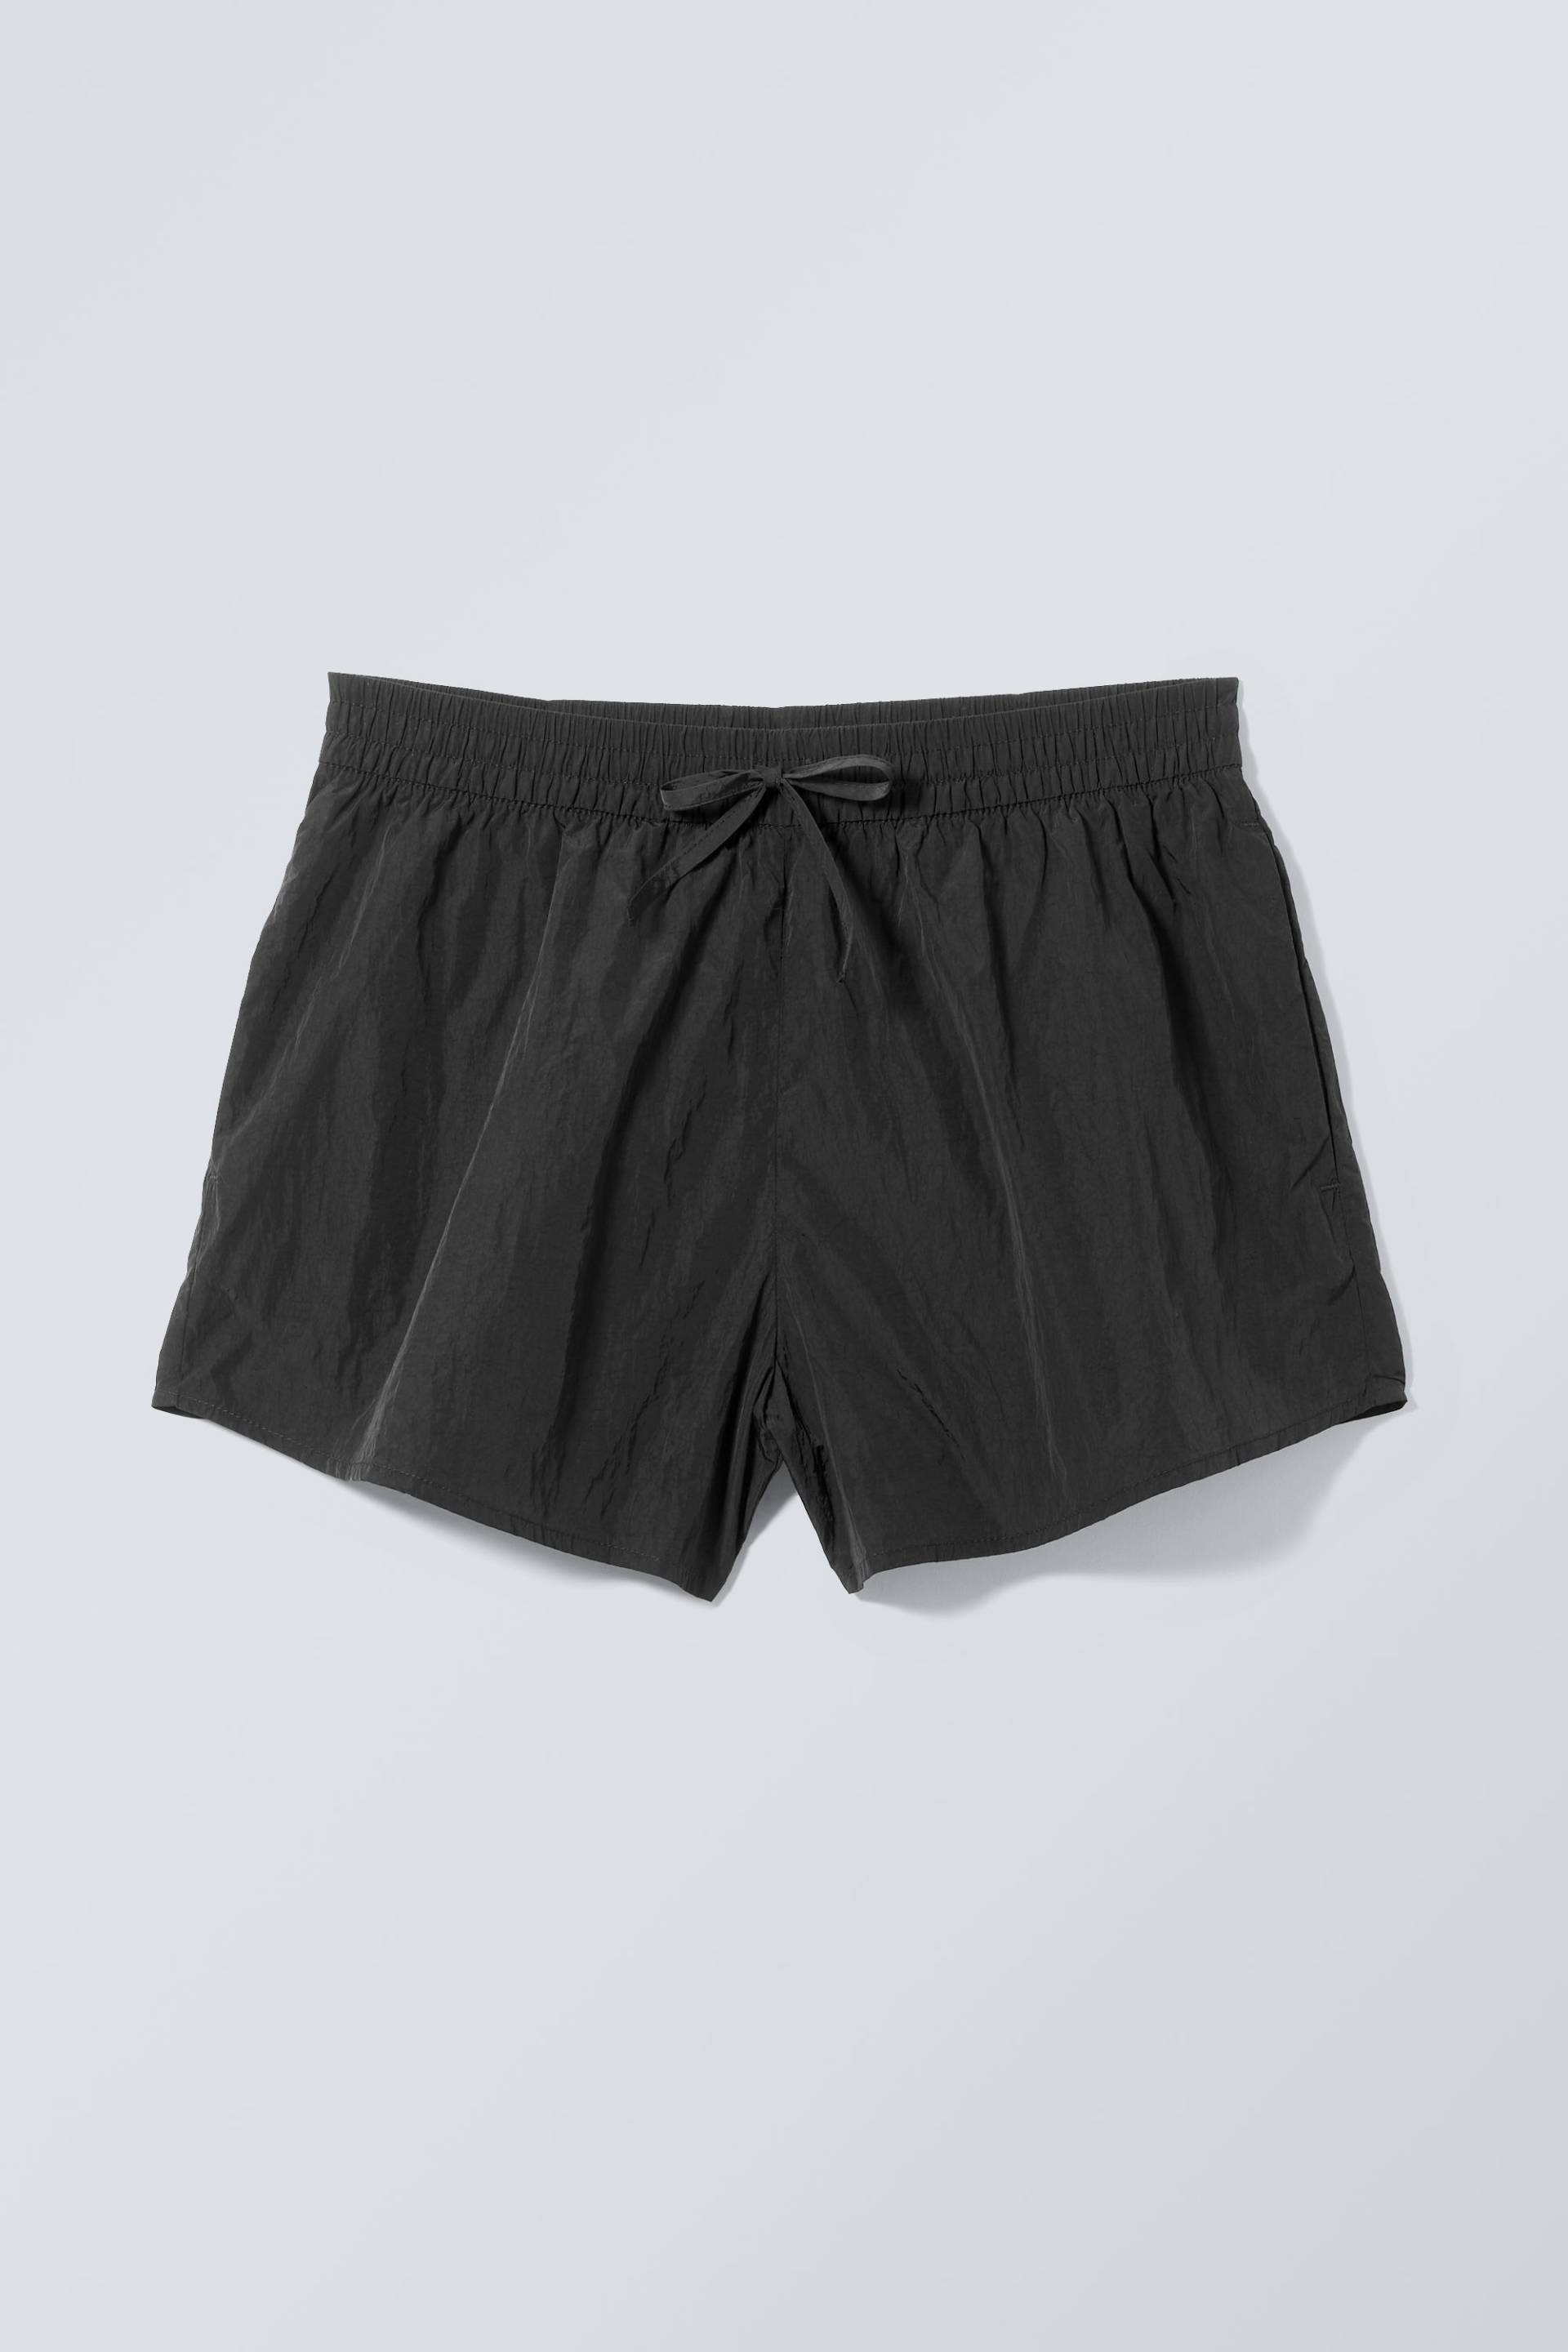 Weekday Nylon-Shorts Tyler Schwarz in Größe 44. Farbe: Black von Weekday